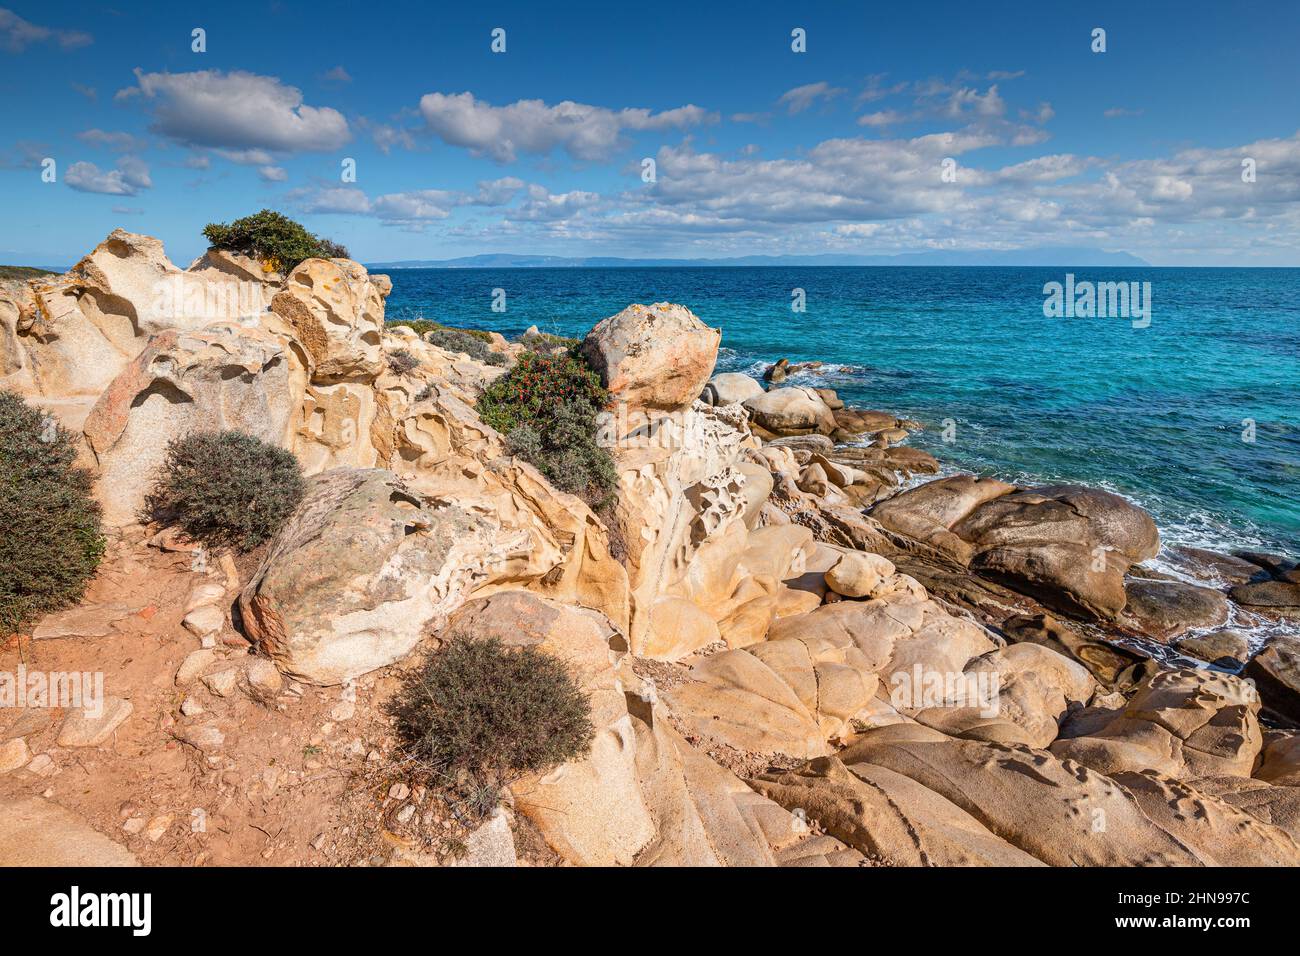 Vista della pittoresca scena di onde di mare che si infrangono sulle rocce di un'isola panoramica vicino alla città di villeggiatura nella regione di Halkidiki Foto Stock